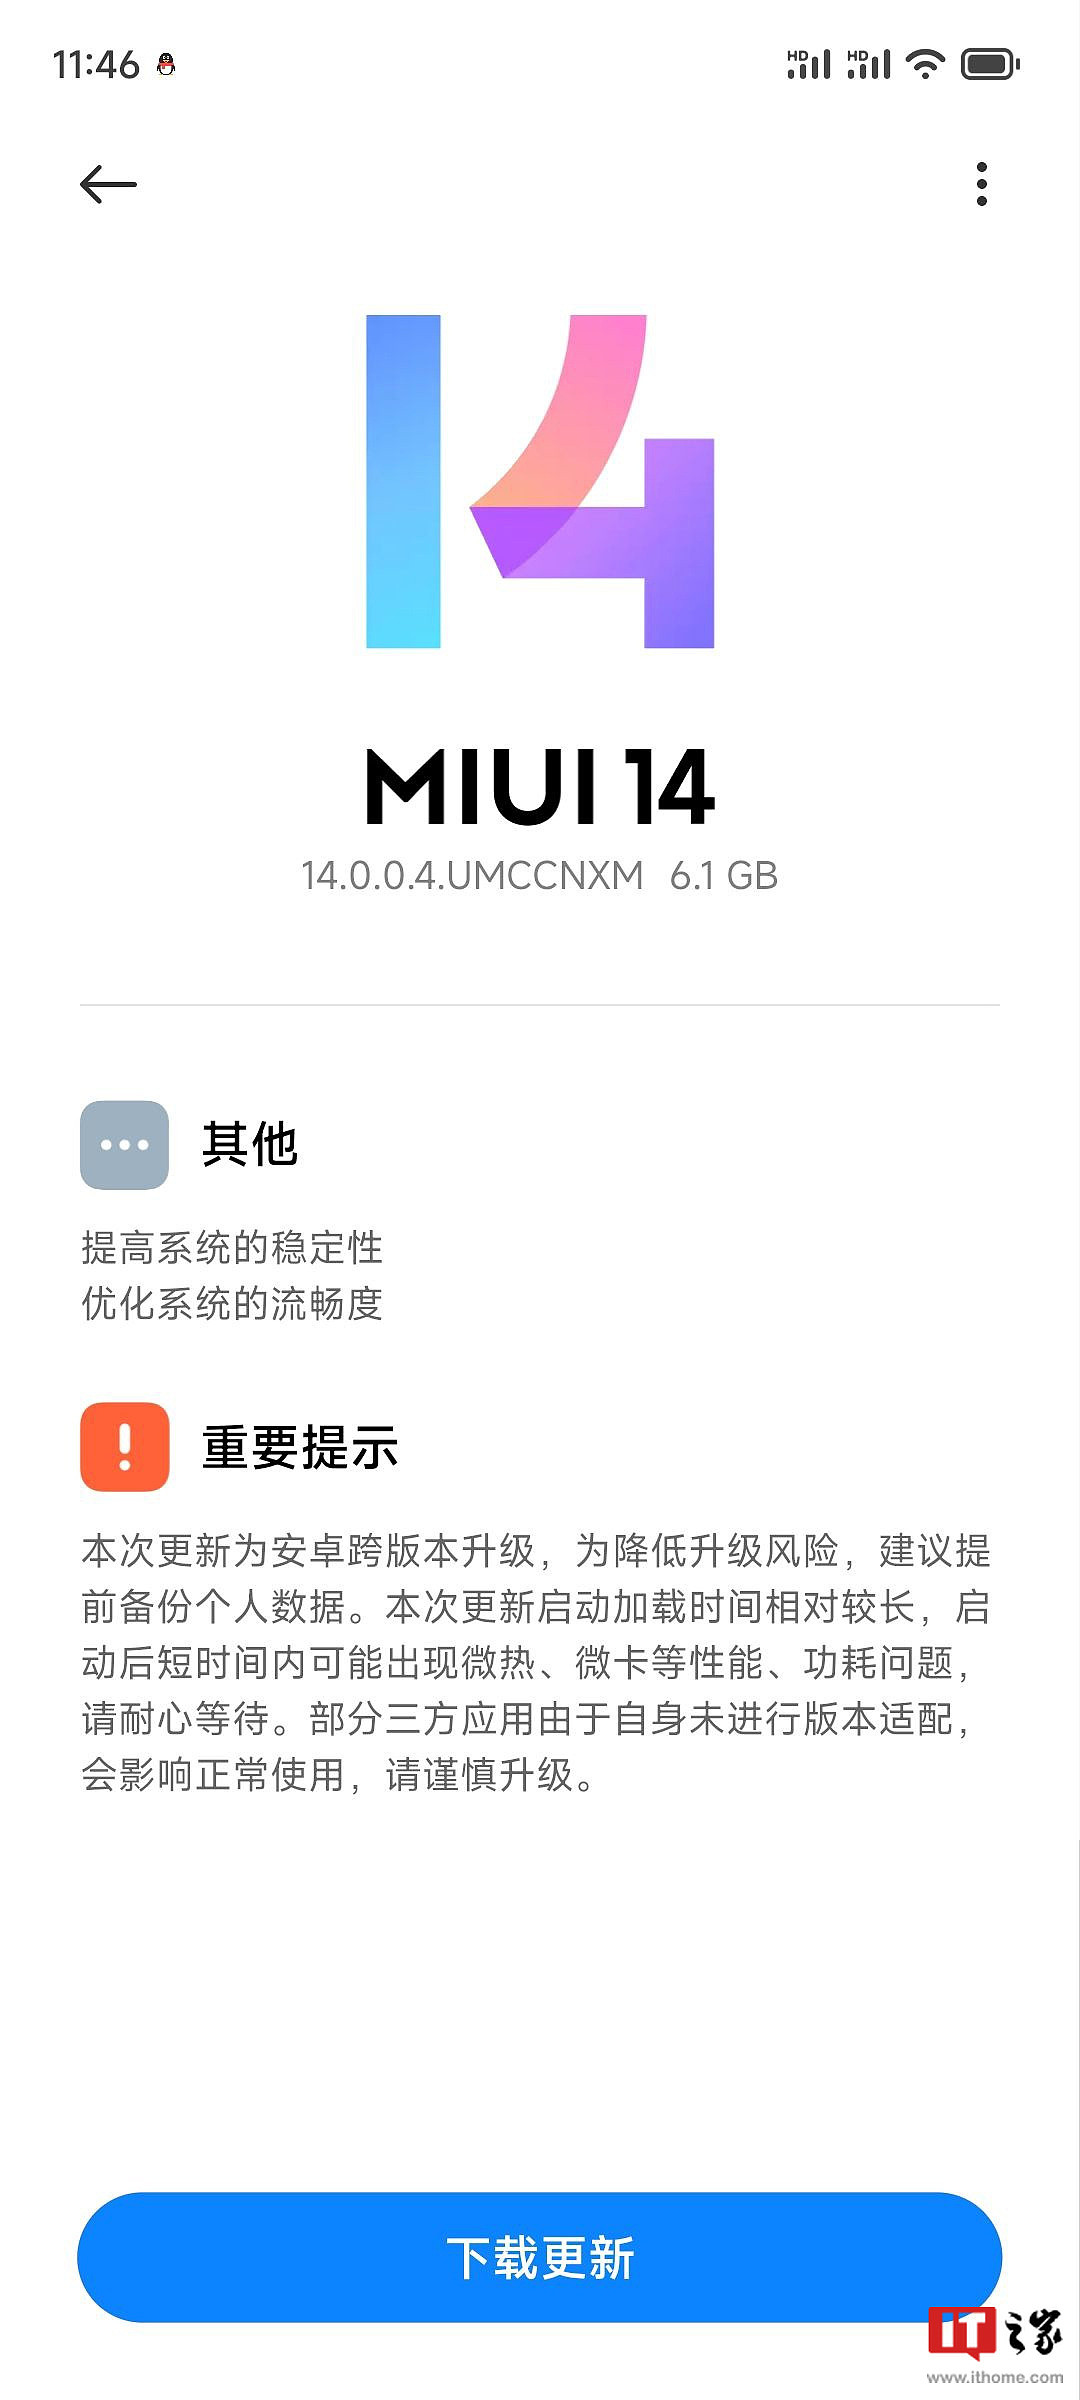 小米 13 手机推送基于安卓 14 的 MIUI 系统更新，更新包大小 6.1GB - 1